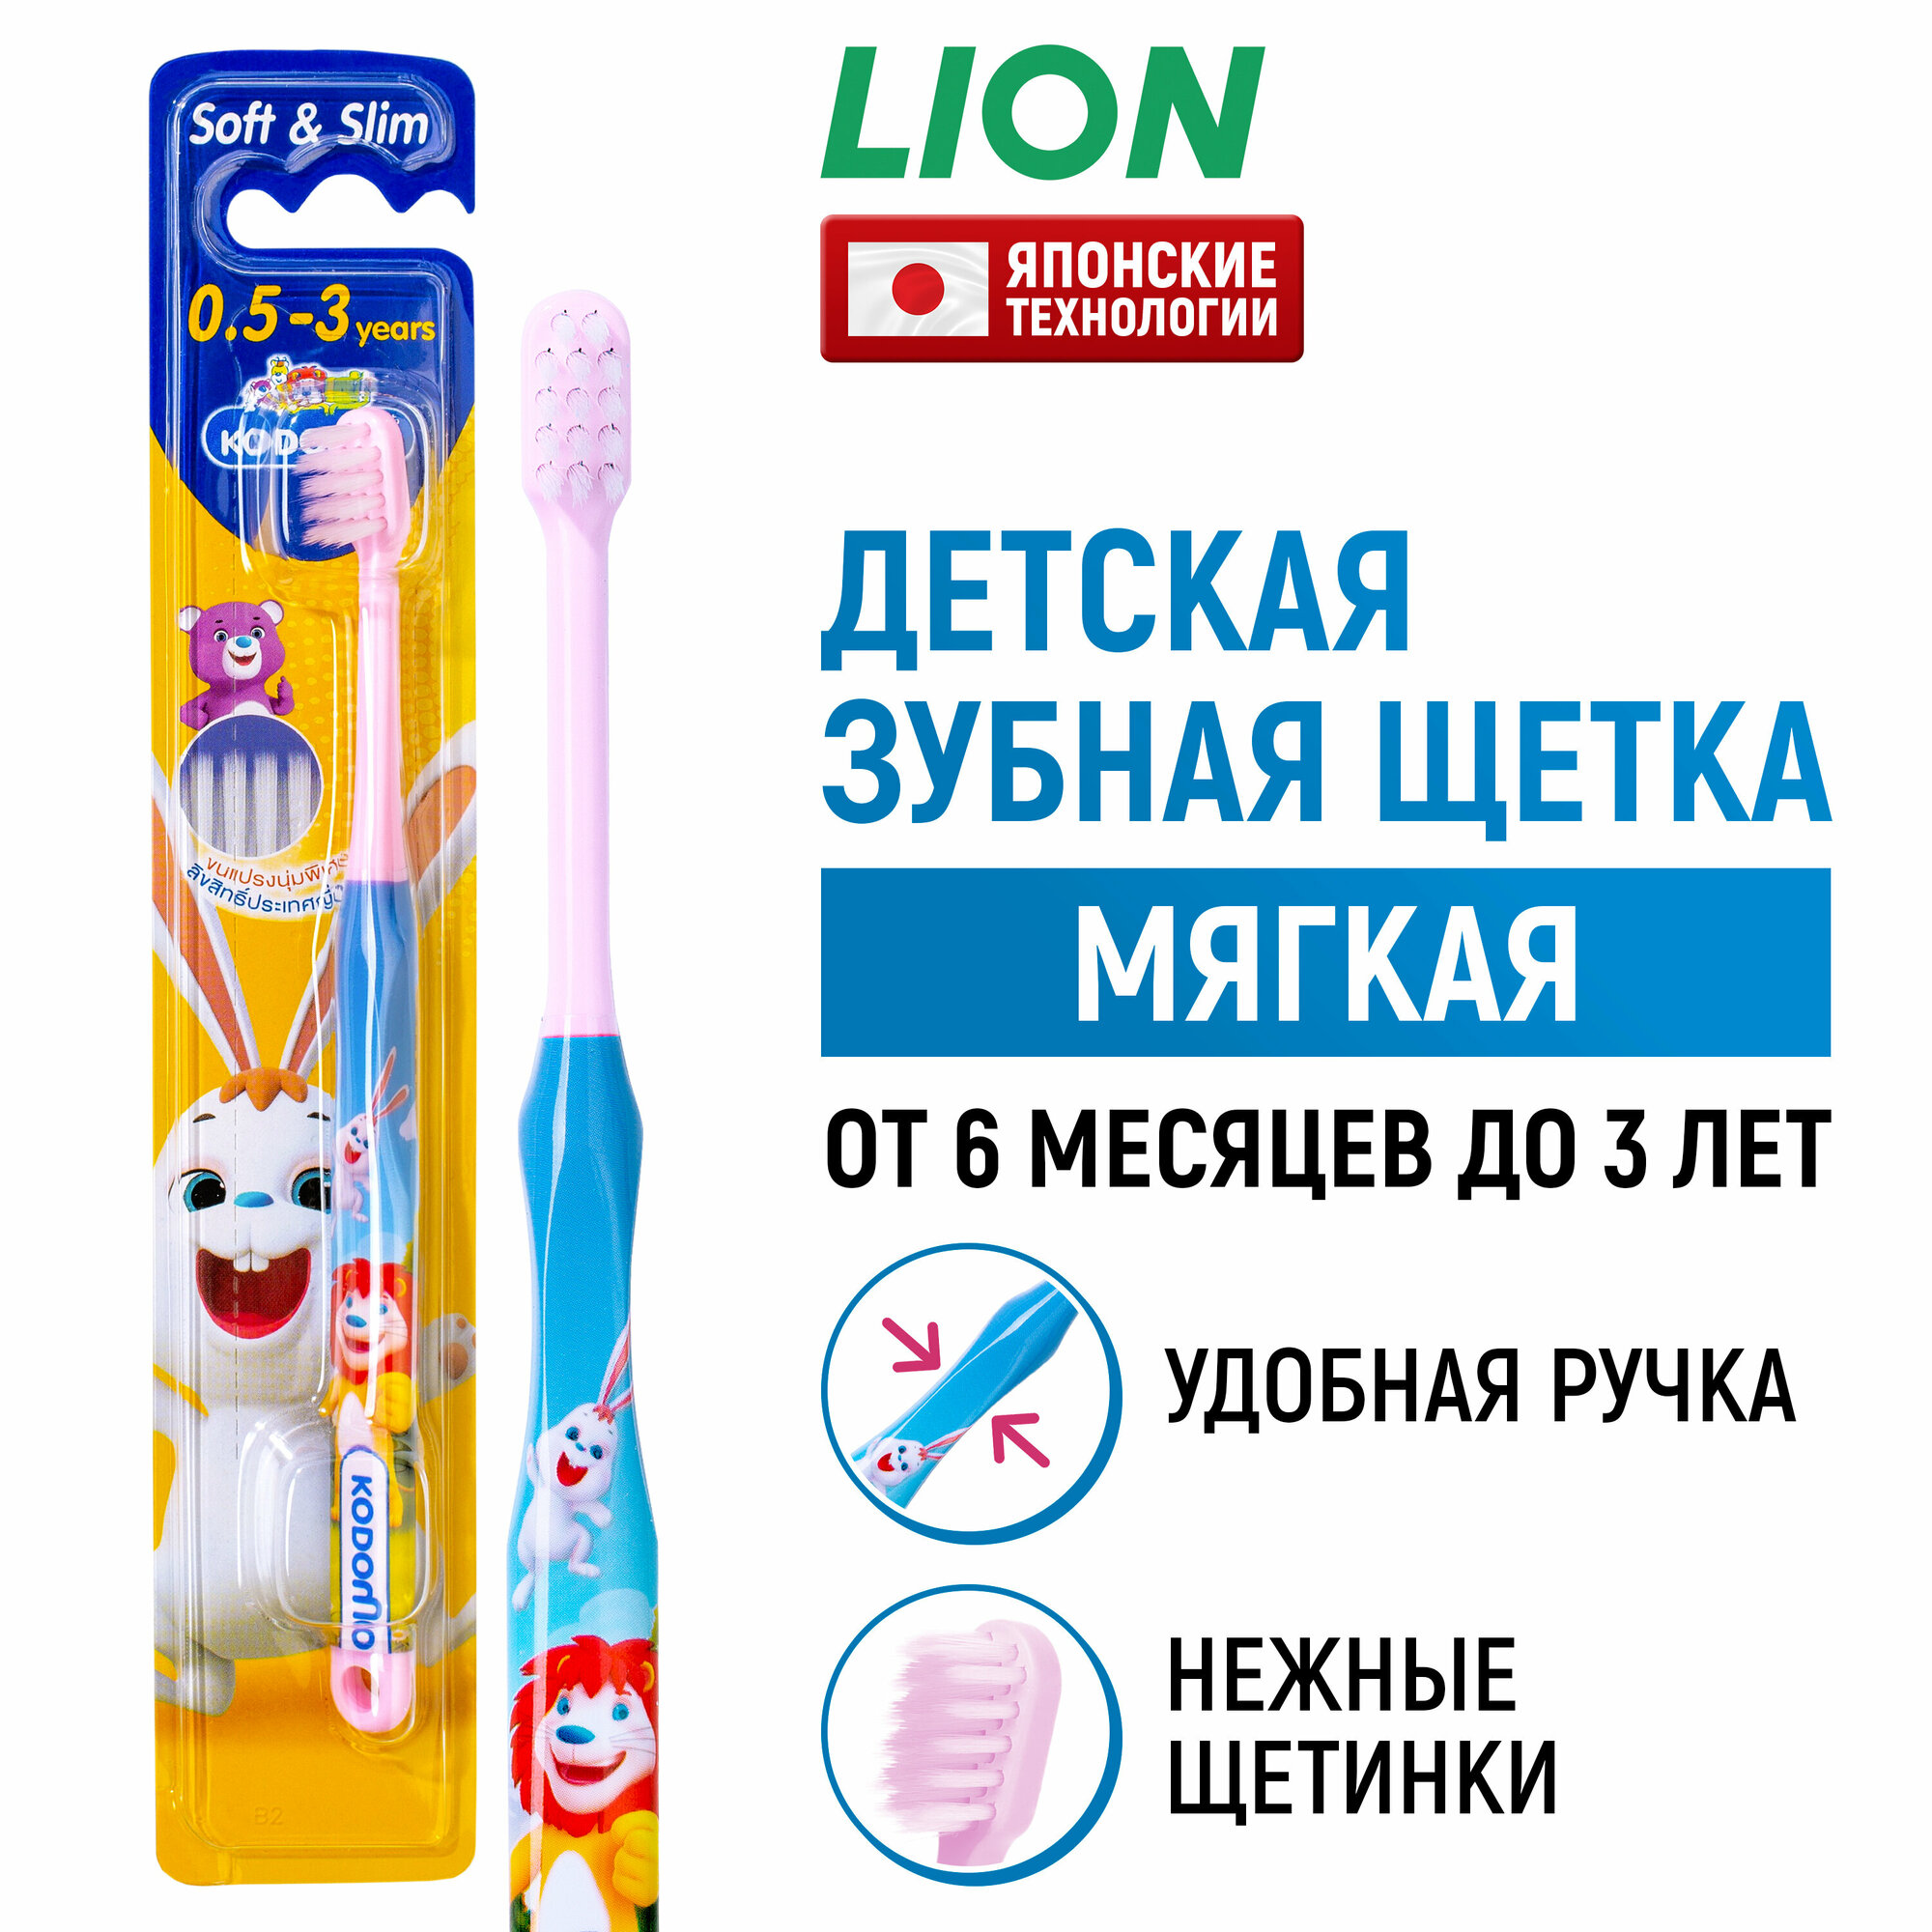 LION Kodomo щётка зубная для детей от 0,5 до 3 лет в цветовом ассортименте